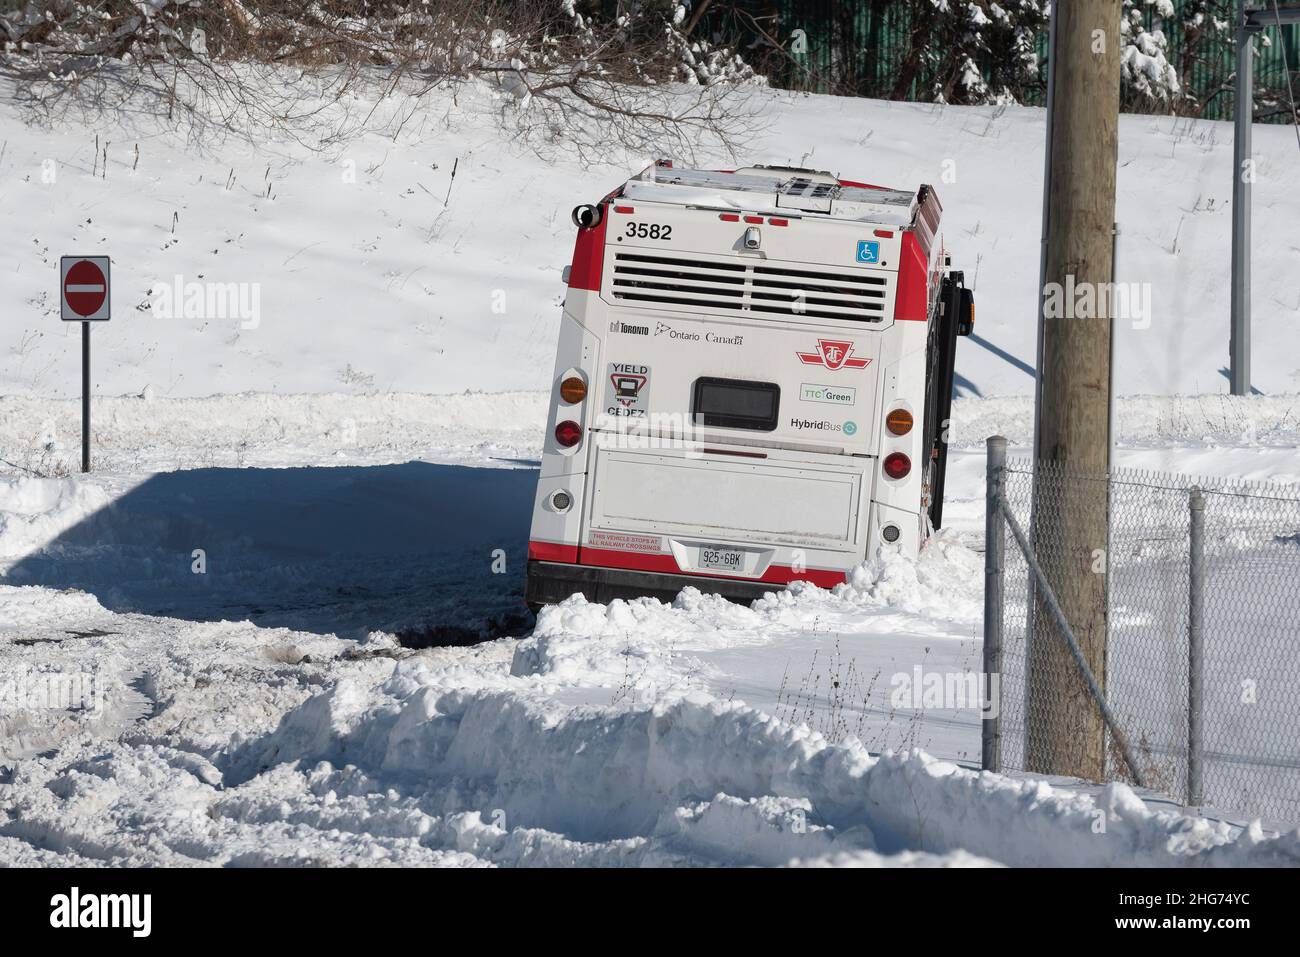 18 janvier 2022.Toronto, Canada - Toronto Transit Commission autobus est vu abandonné pendant plus d'une journée sur route en raison de la tempête de neige paralysante qui a déversé un niveau record de neige à Toronto le lundi 17 janvier 2022.Dominic Chan/EXimages Banque D'Images